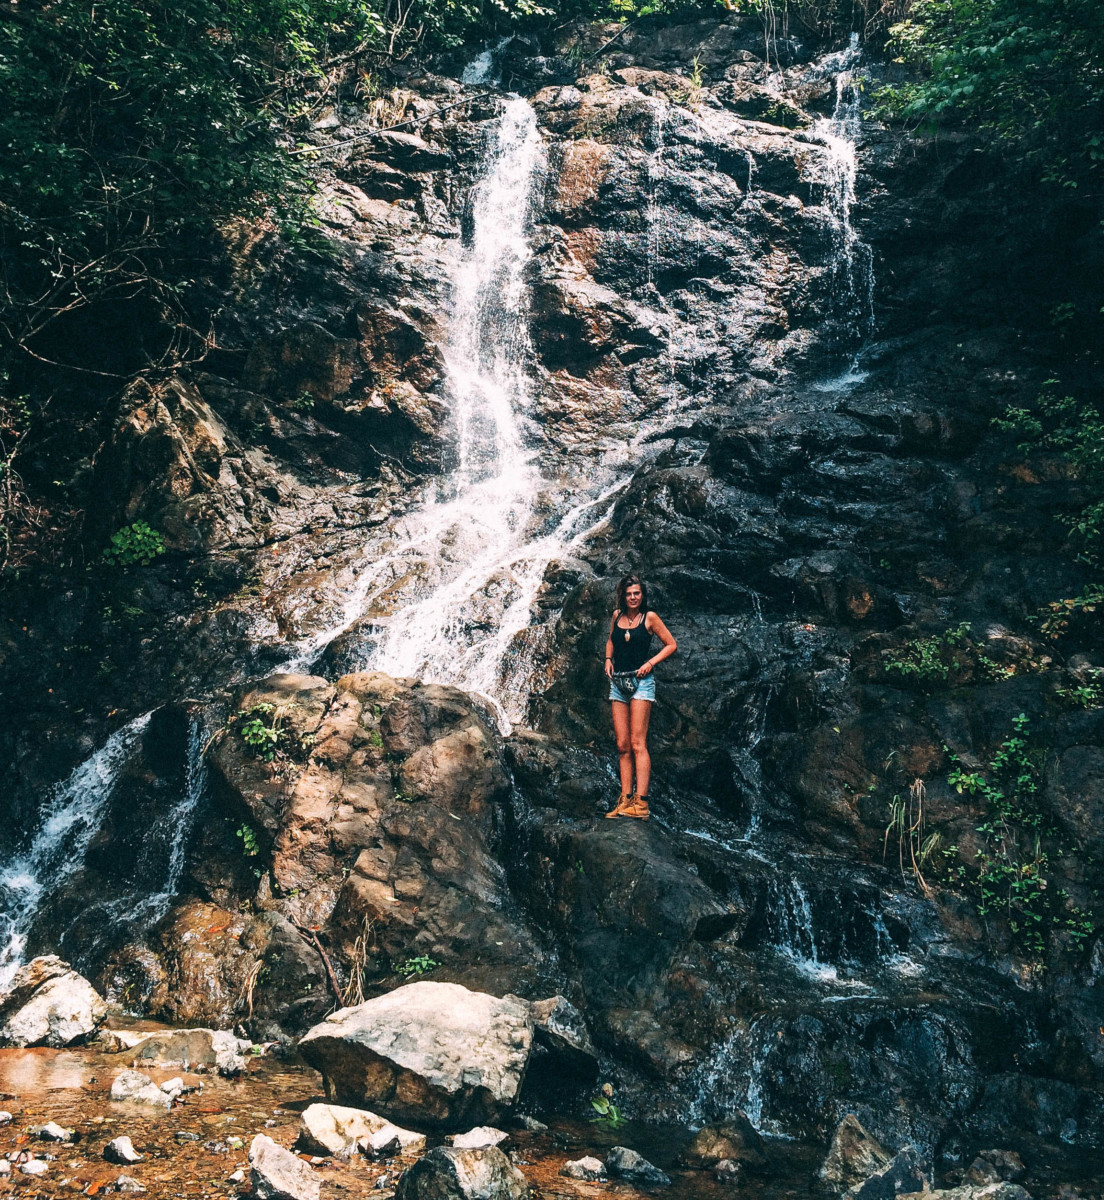 Beautiful Stream Waterfall Run On The Rocks in Costa Rica